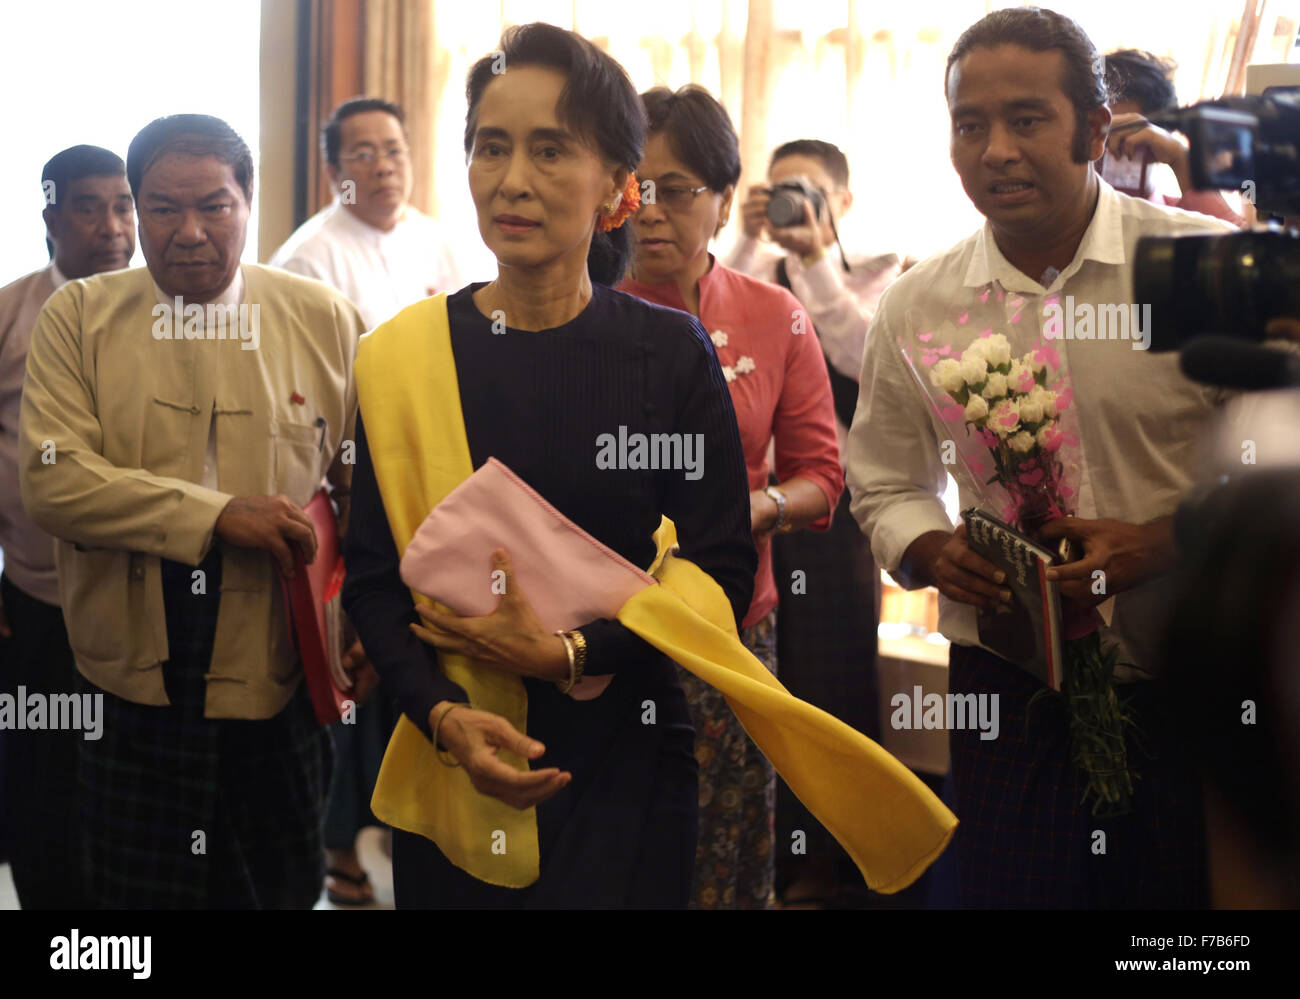 Yangon, Myanmar. 28 Nov, 2015. Myanmar opposizione della Lega nazionale per la democrazia (NLD) leader Aung San Suu Kyi arriva in occasione di una riunione con la NLD eletti i candidati a Yangon, Myanmar, nov. 28, 2015. Credito: U Aung/Xinhua/Alamy Live News Foto Stock